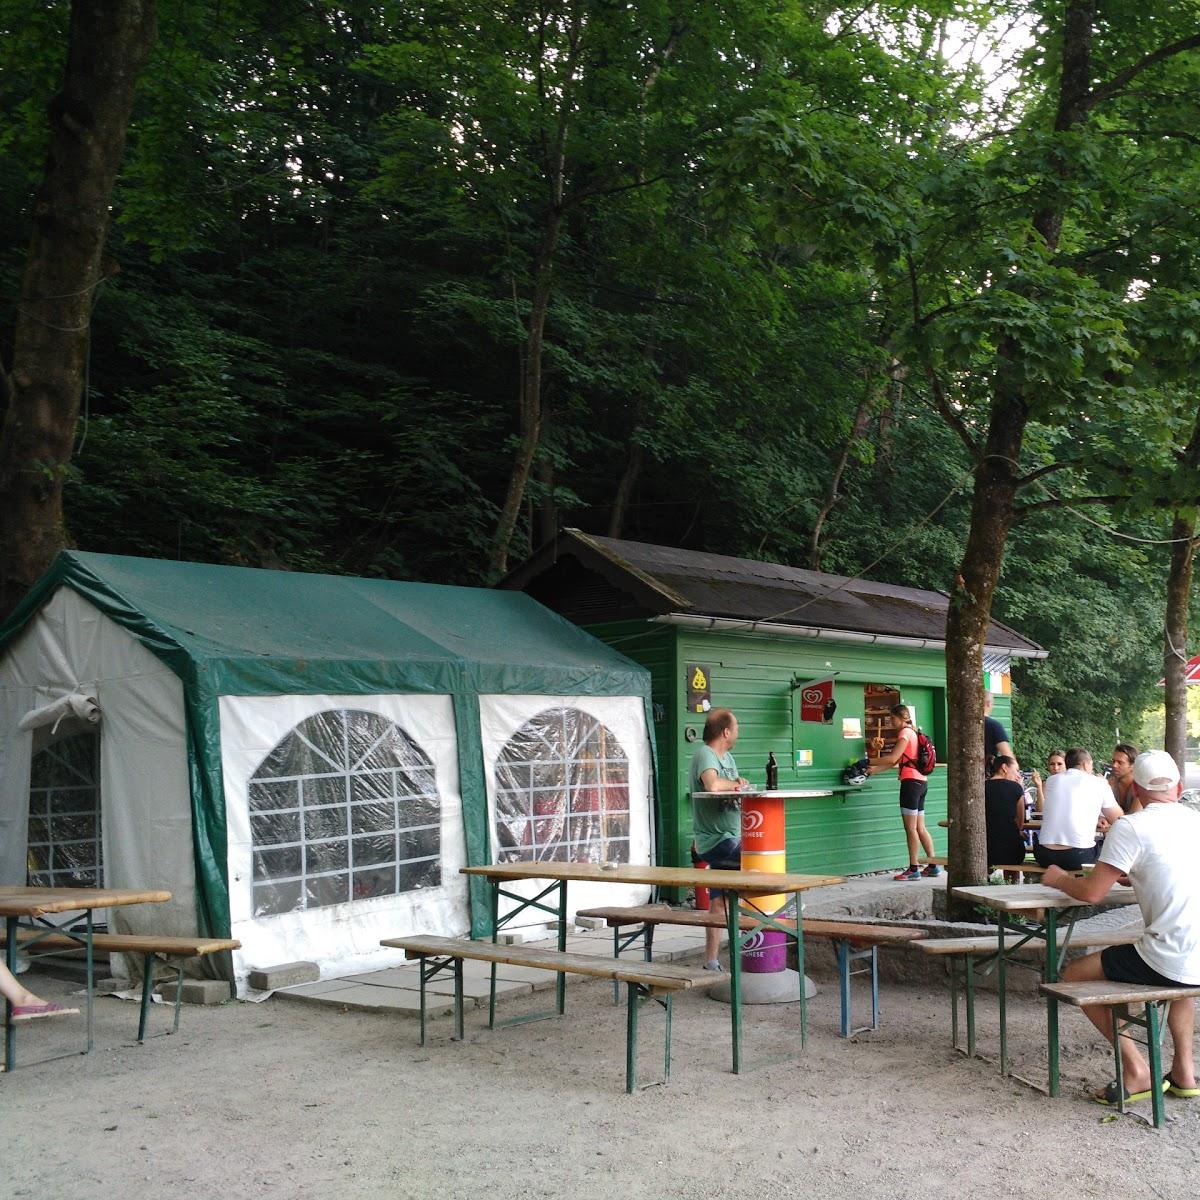 Restaurant "Café ami - klein & fein" in  Isartal